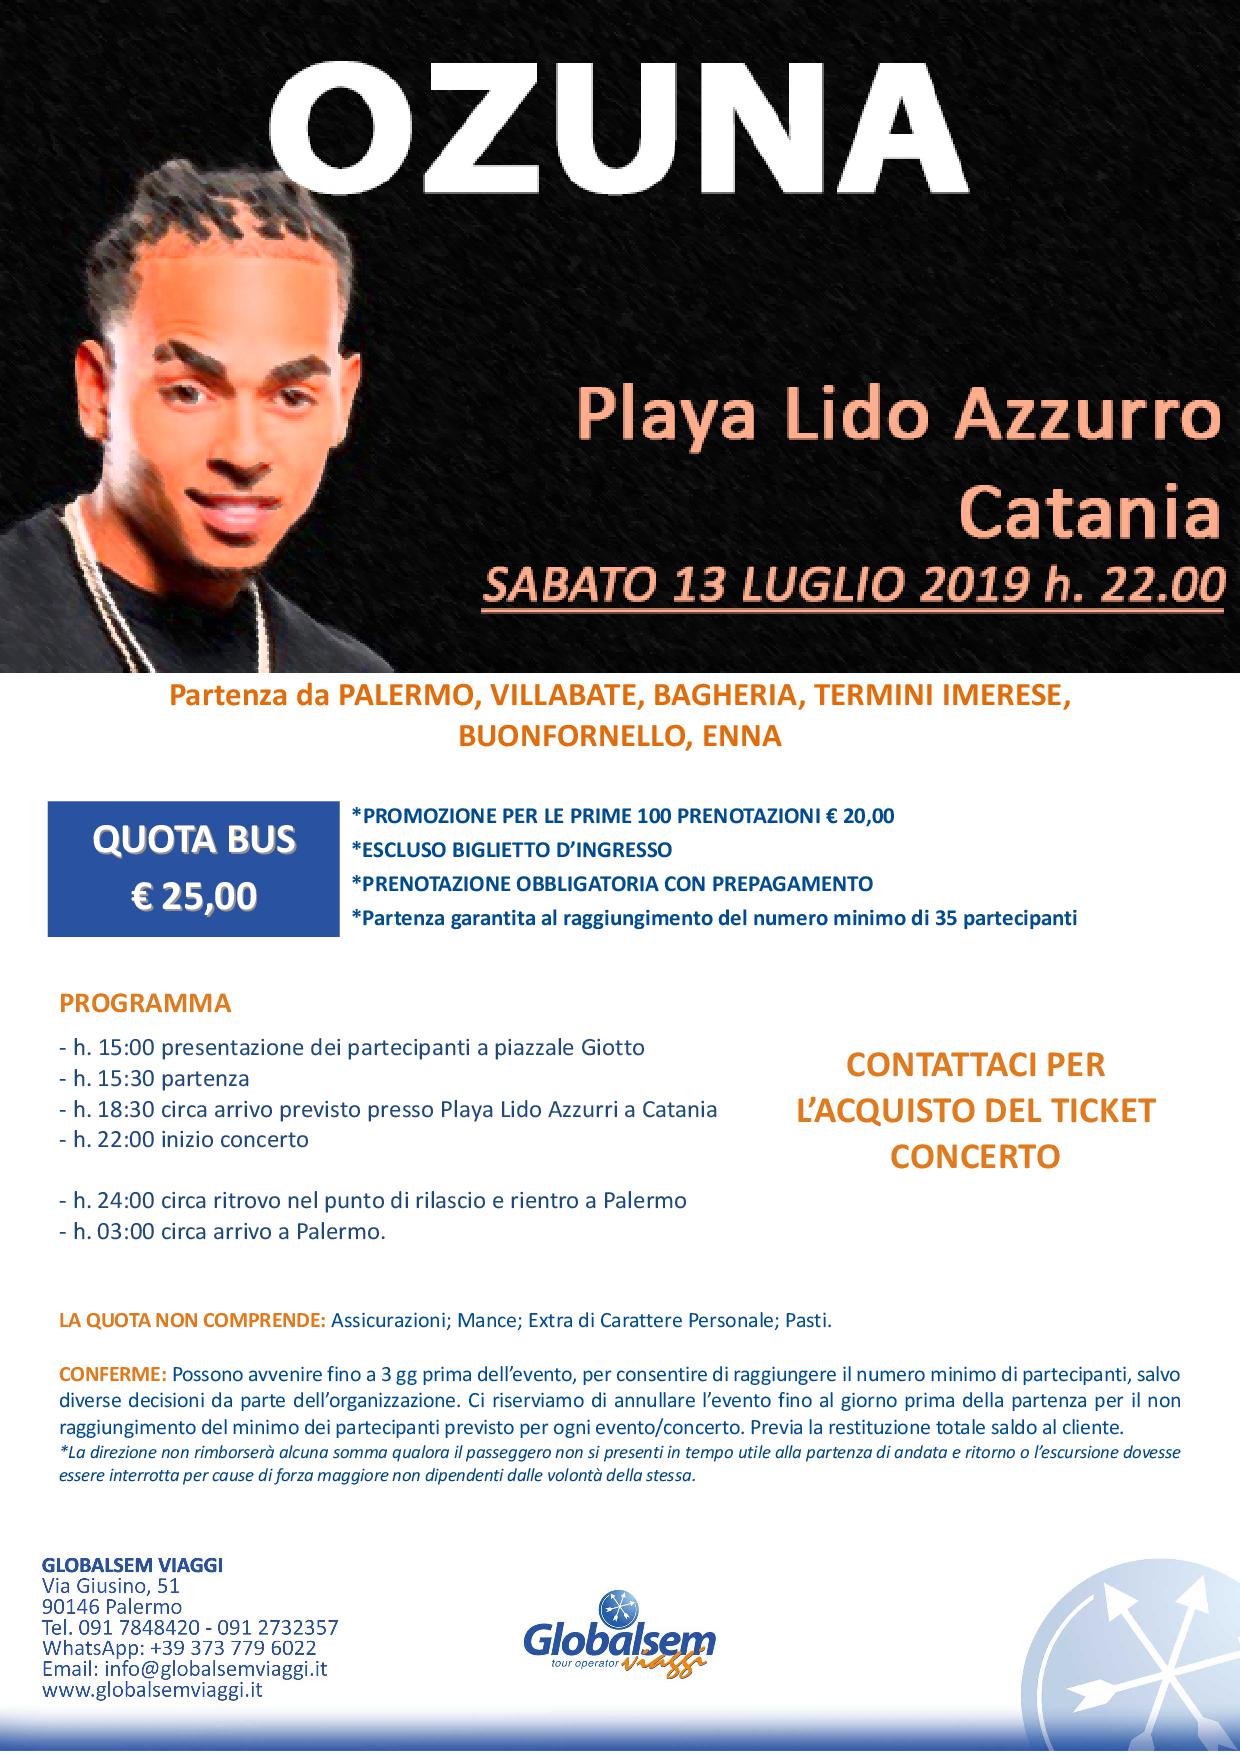 Bus per Ozuna in concerto a Catania il 13 luglio 2019 da Palermo, Villabate, Bagheria, Casteldaccia, Termini Imerese.